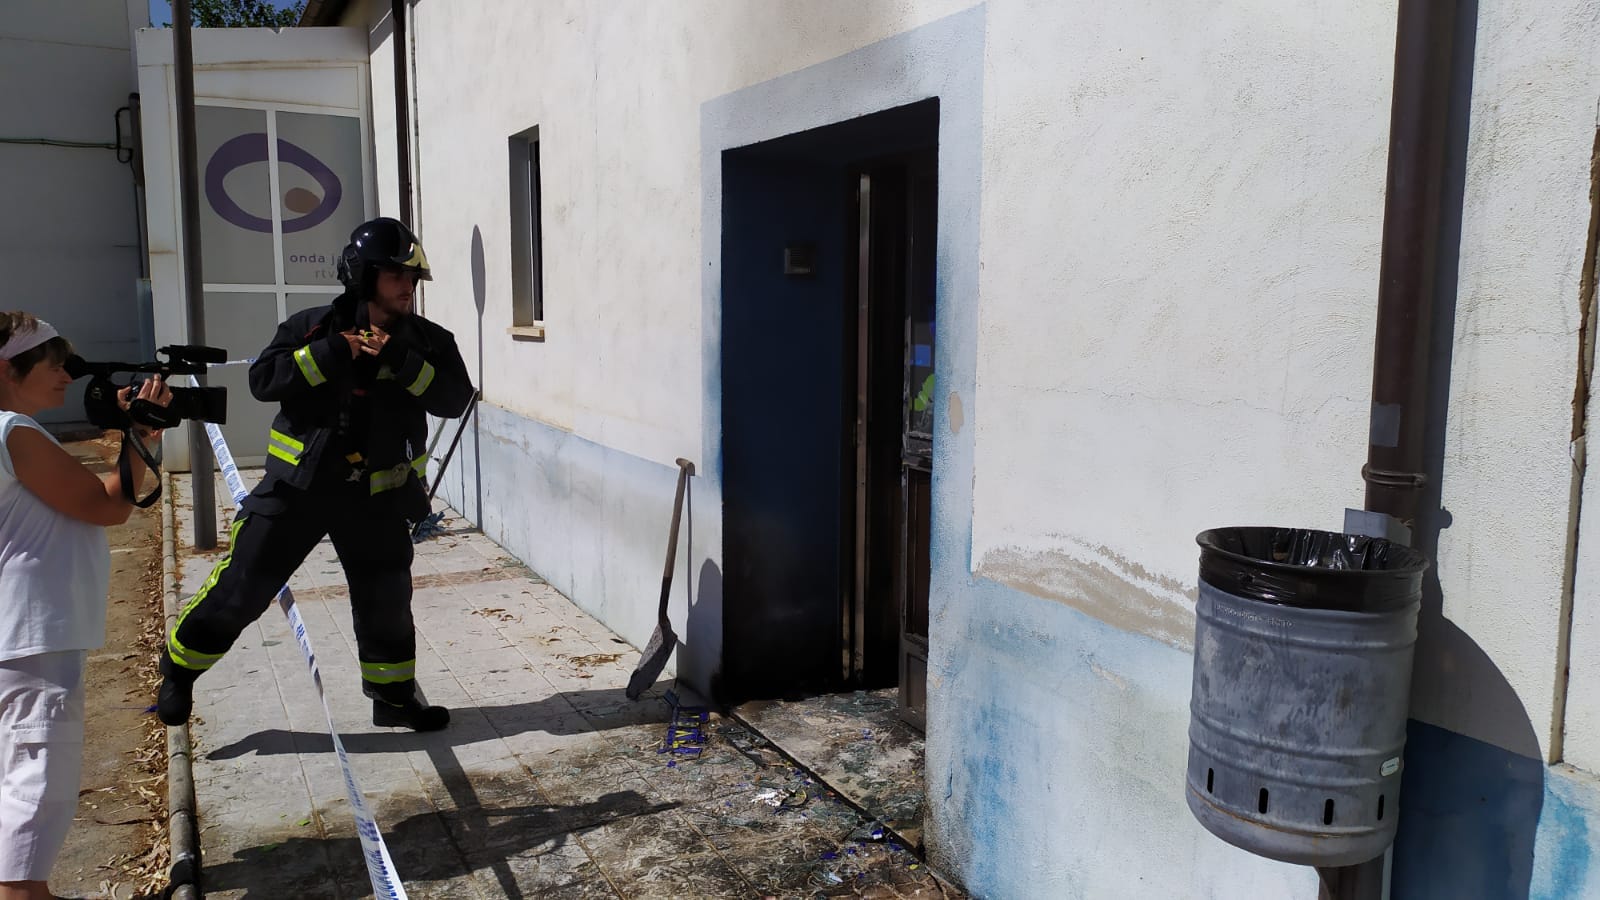 Así han quedado las instalaciones de Onda Jaén tras el incendio